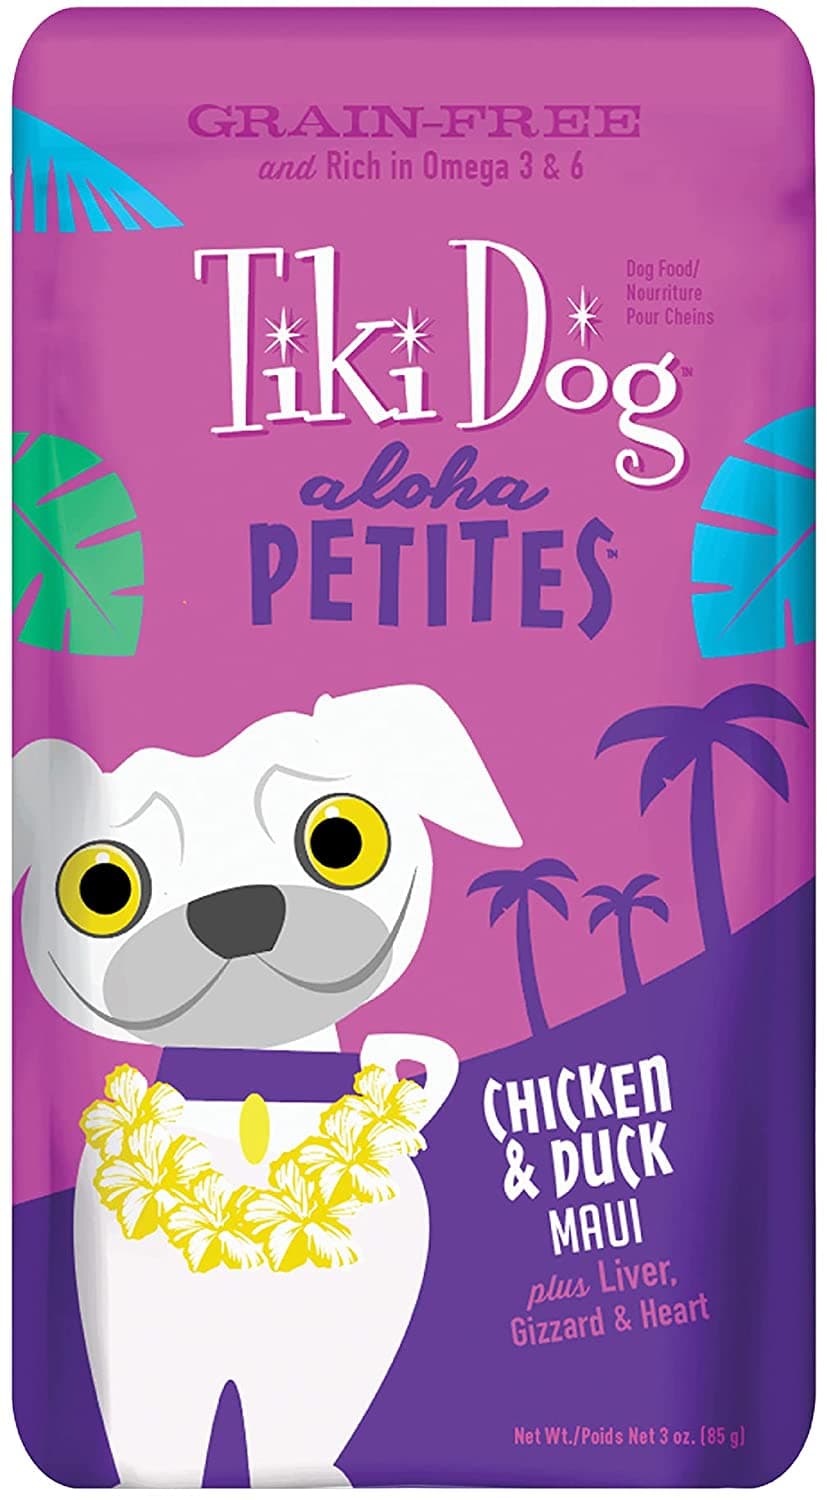 Tiki Dog Aloha Petites Wet Dog Food Chicken & Duck Maui - 3.5 oz. can